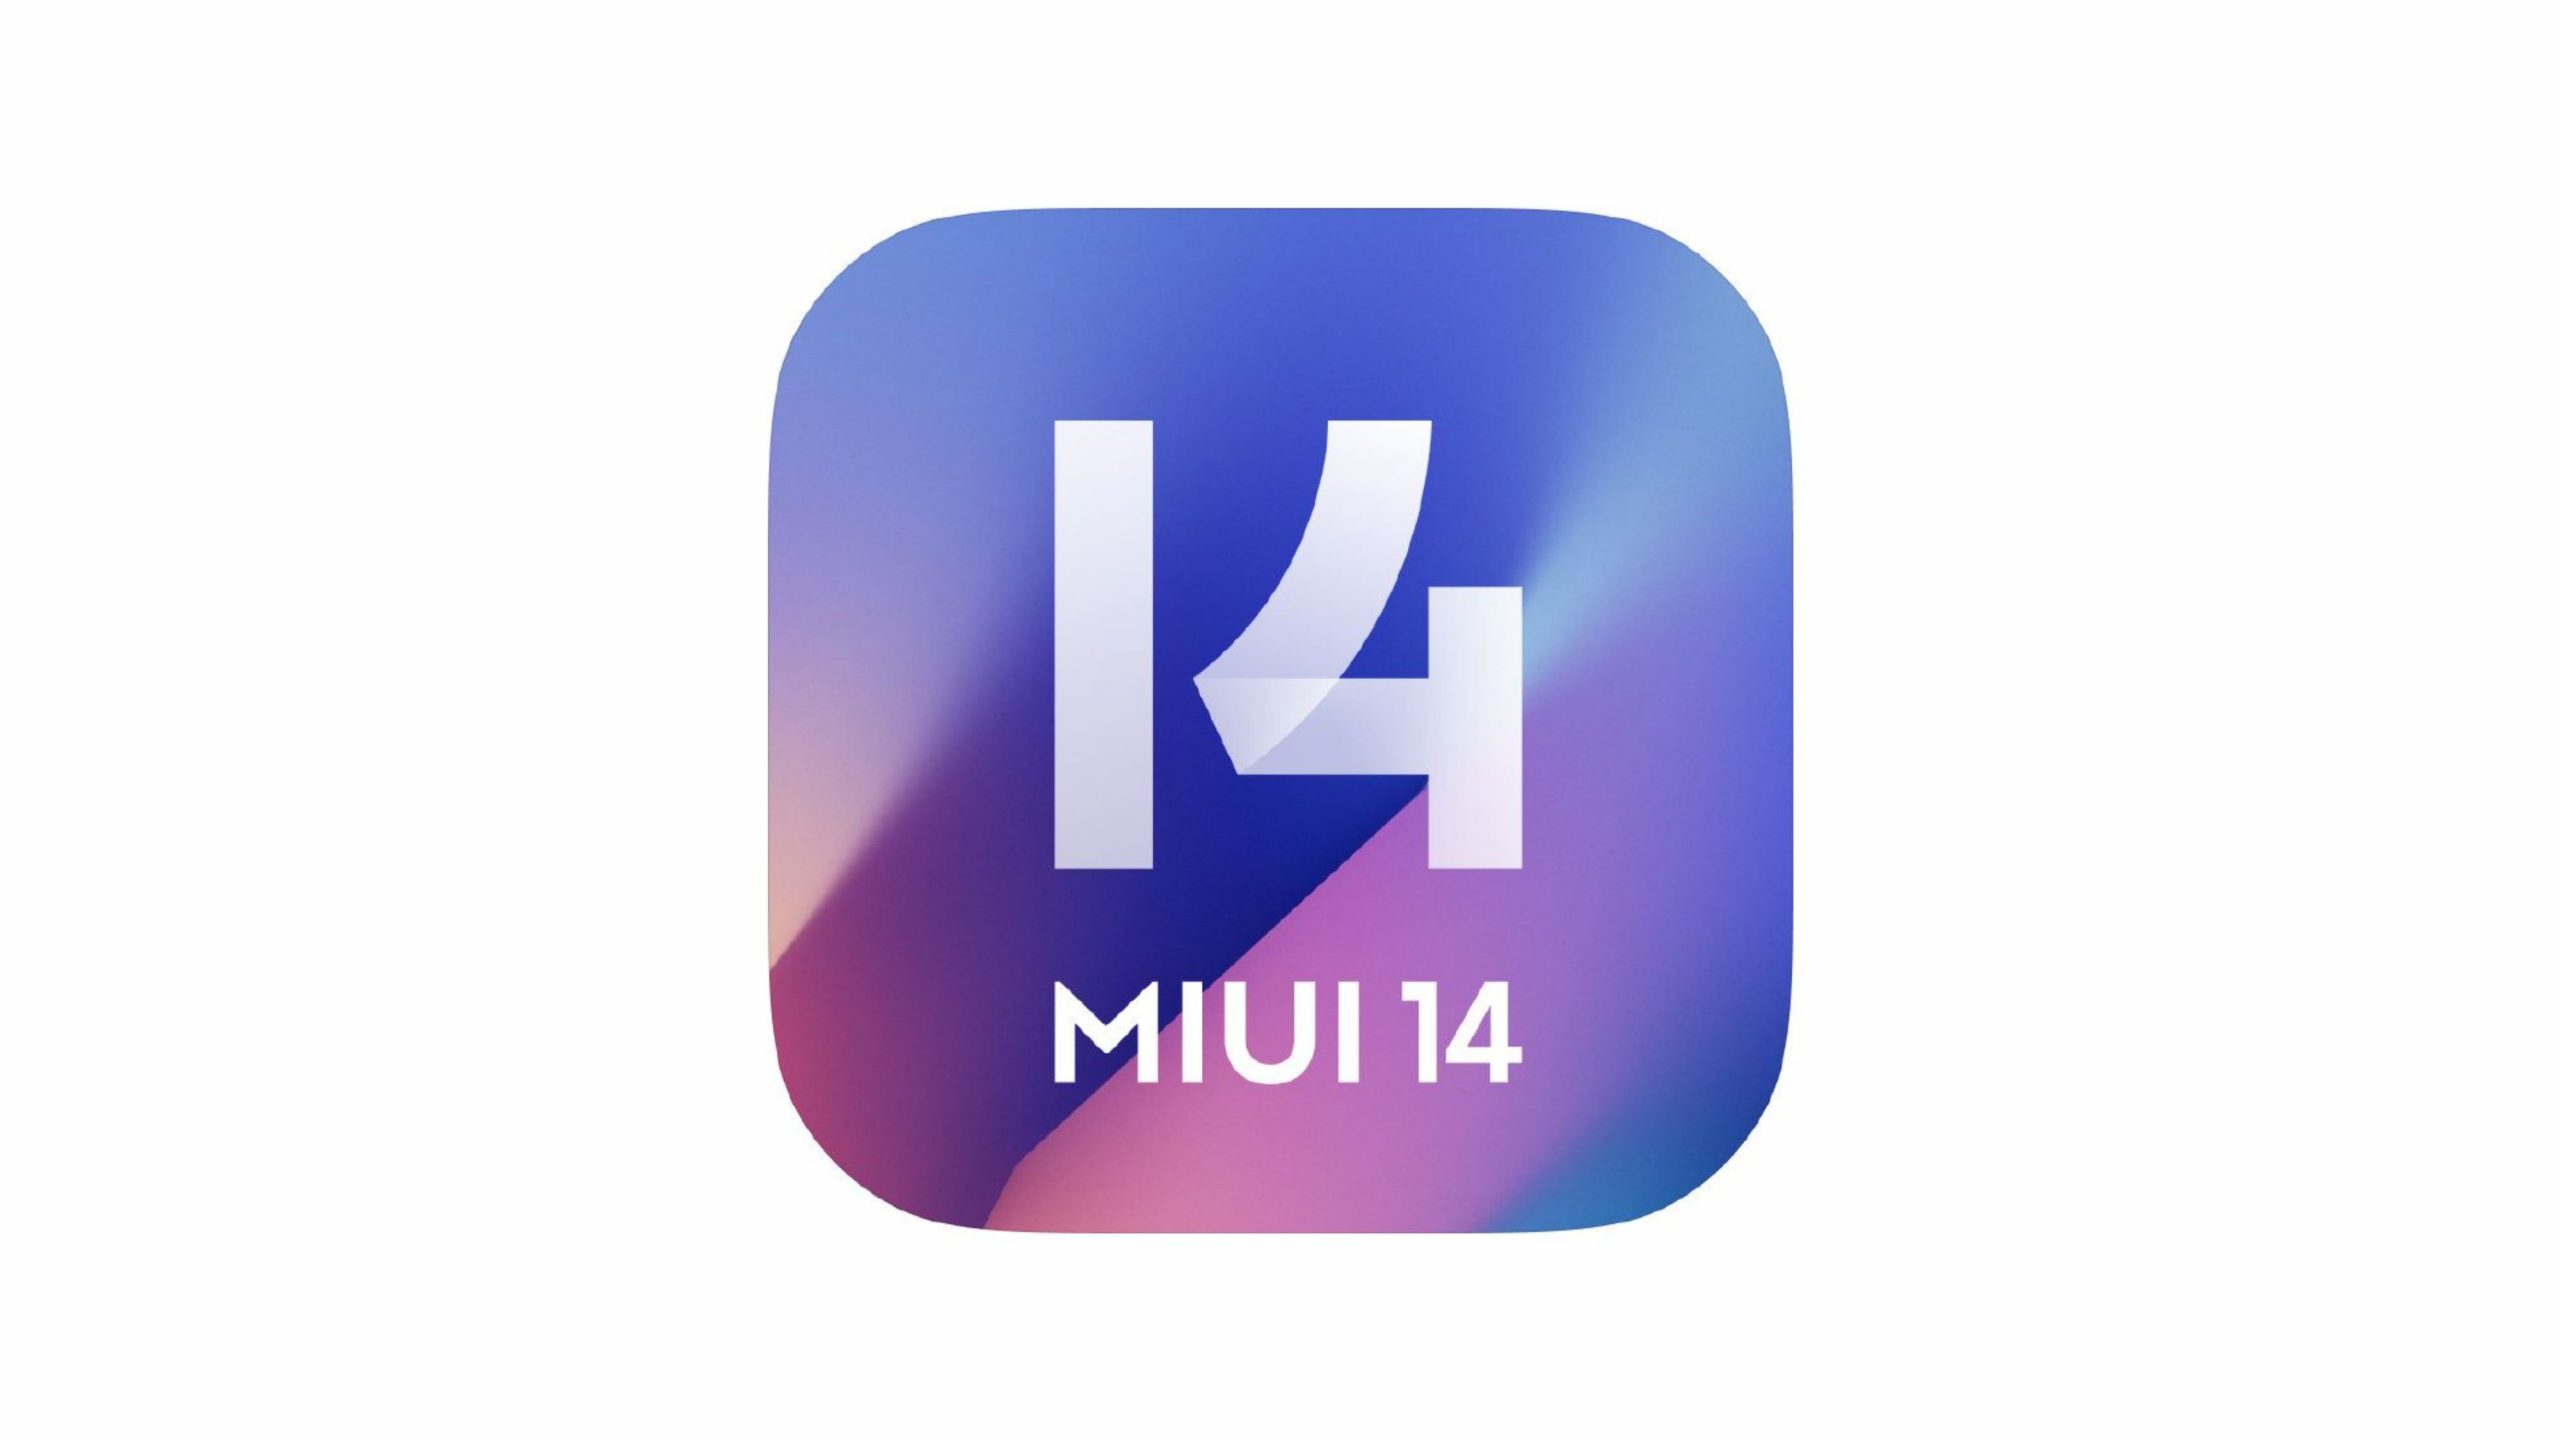 Miui 14 память. MIUI 14. Логотип MIUI 14. Xiaomi MIUI 14. MIUI 14.0.4.